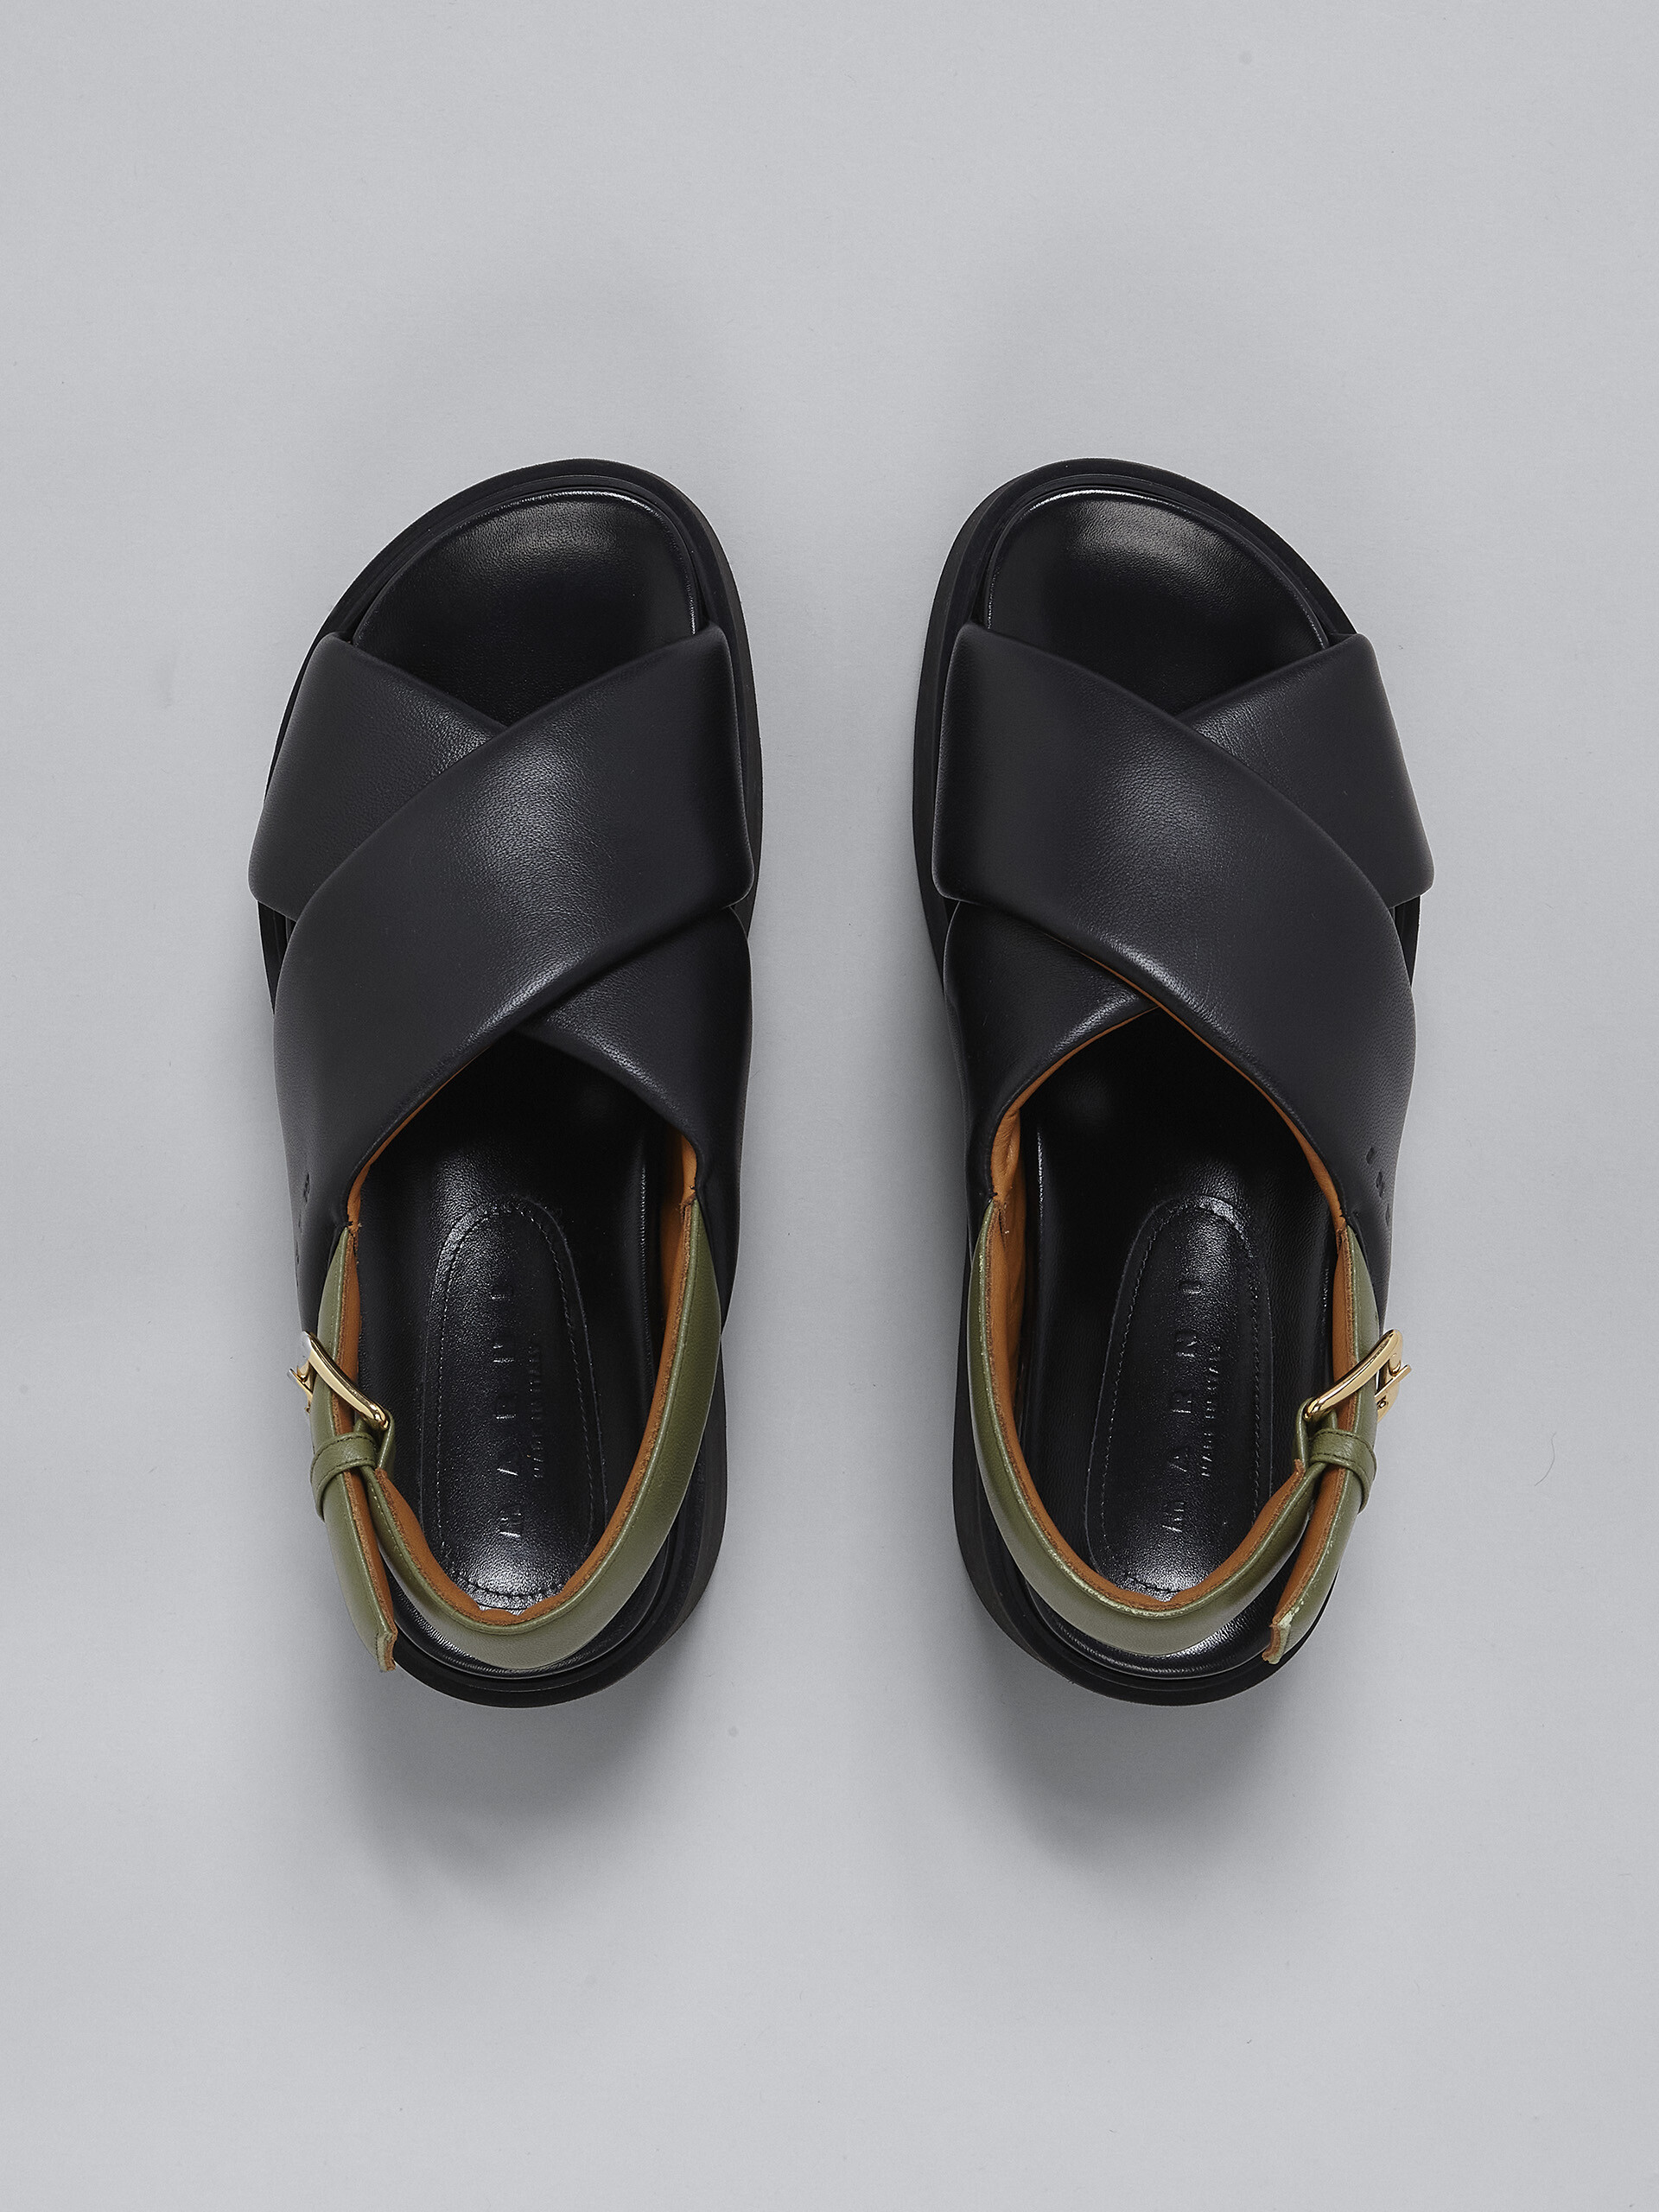 블랙 및 그린 가죽 웨지 - Sandals - Image 4